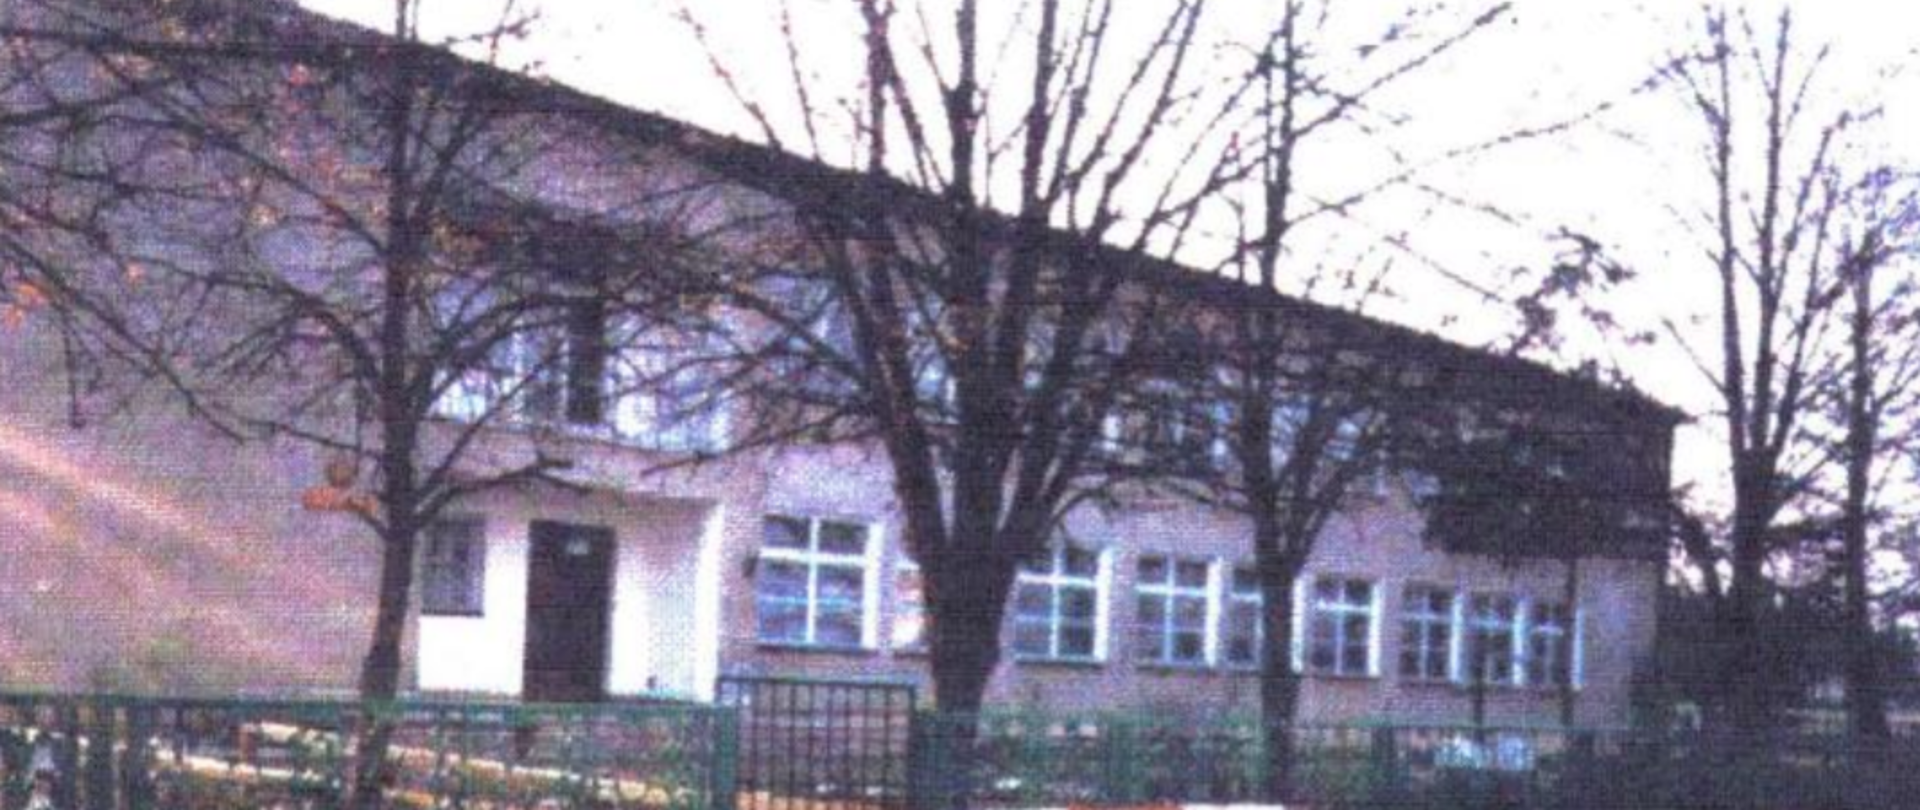 zdjęcie przedstawiające budynek szkoły w roku 1965, zdjęcie wielobarwne